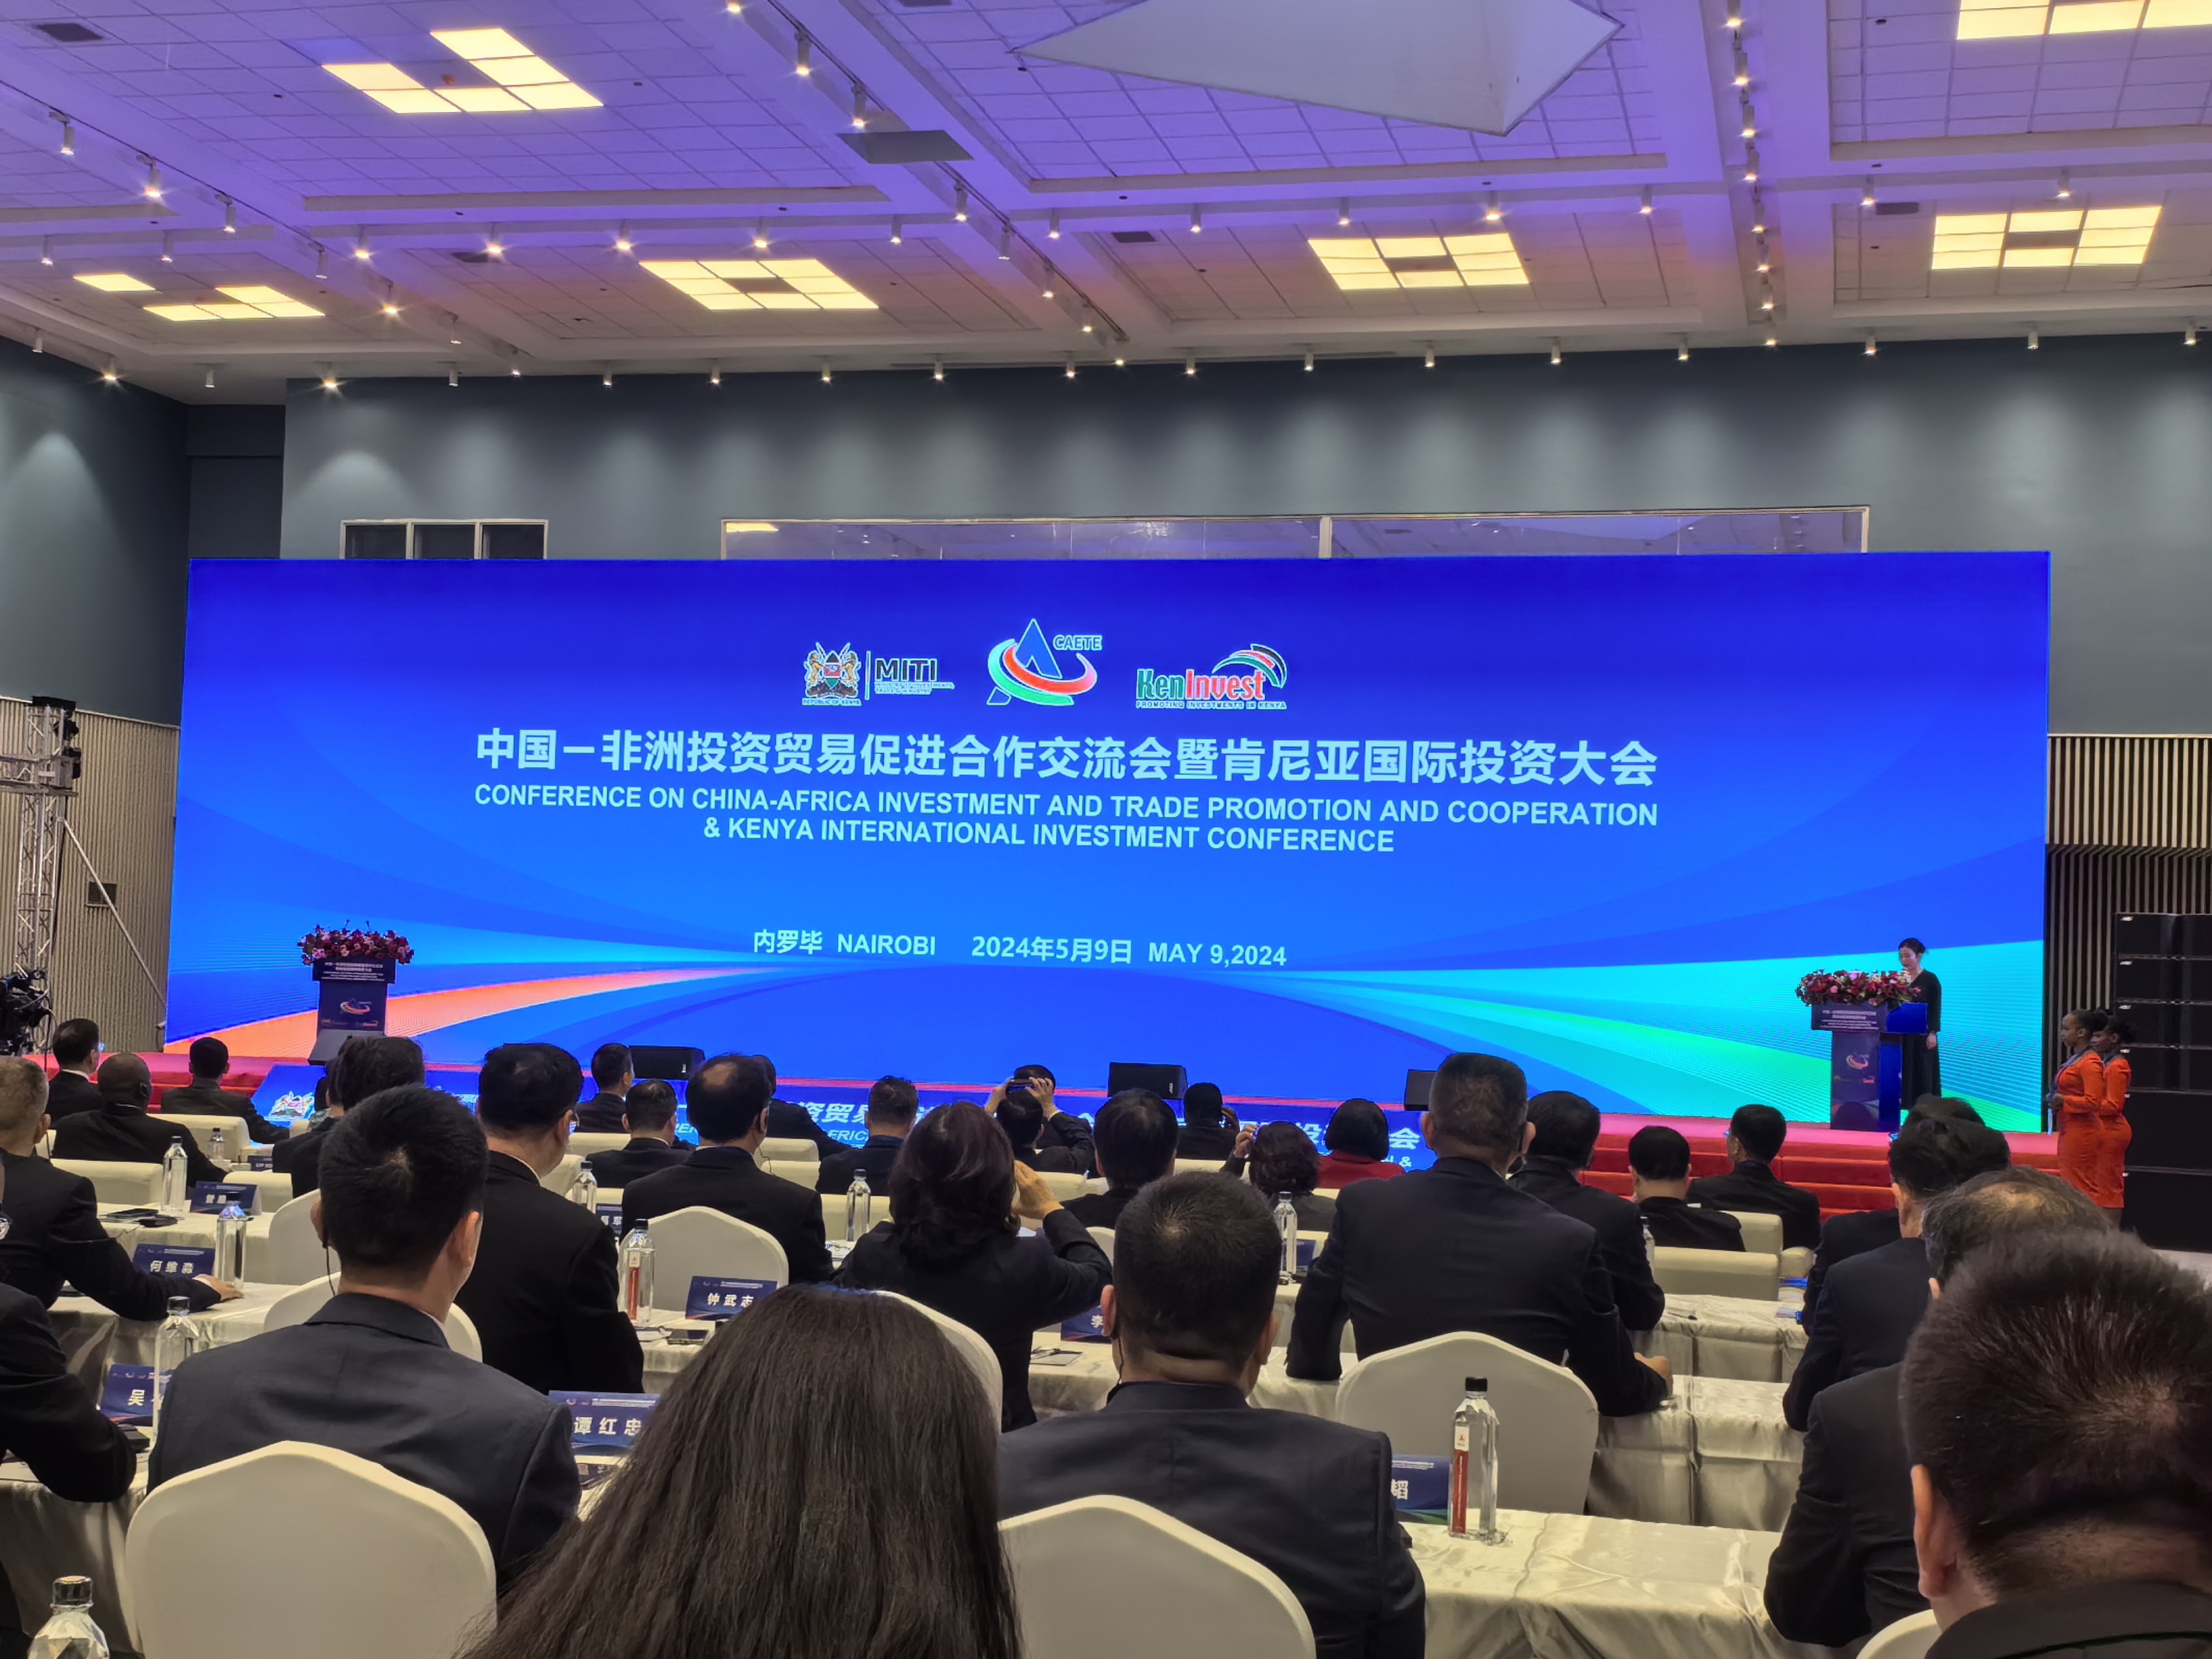 中国—非洲投资贸易促进合作交流会暨肯尼亚国际投资大会举行